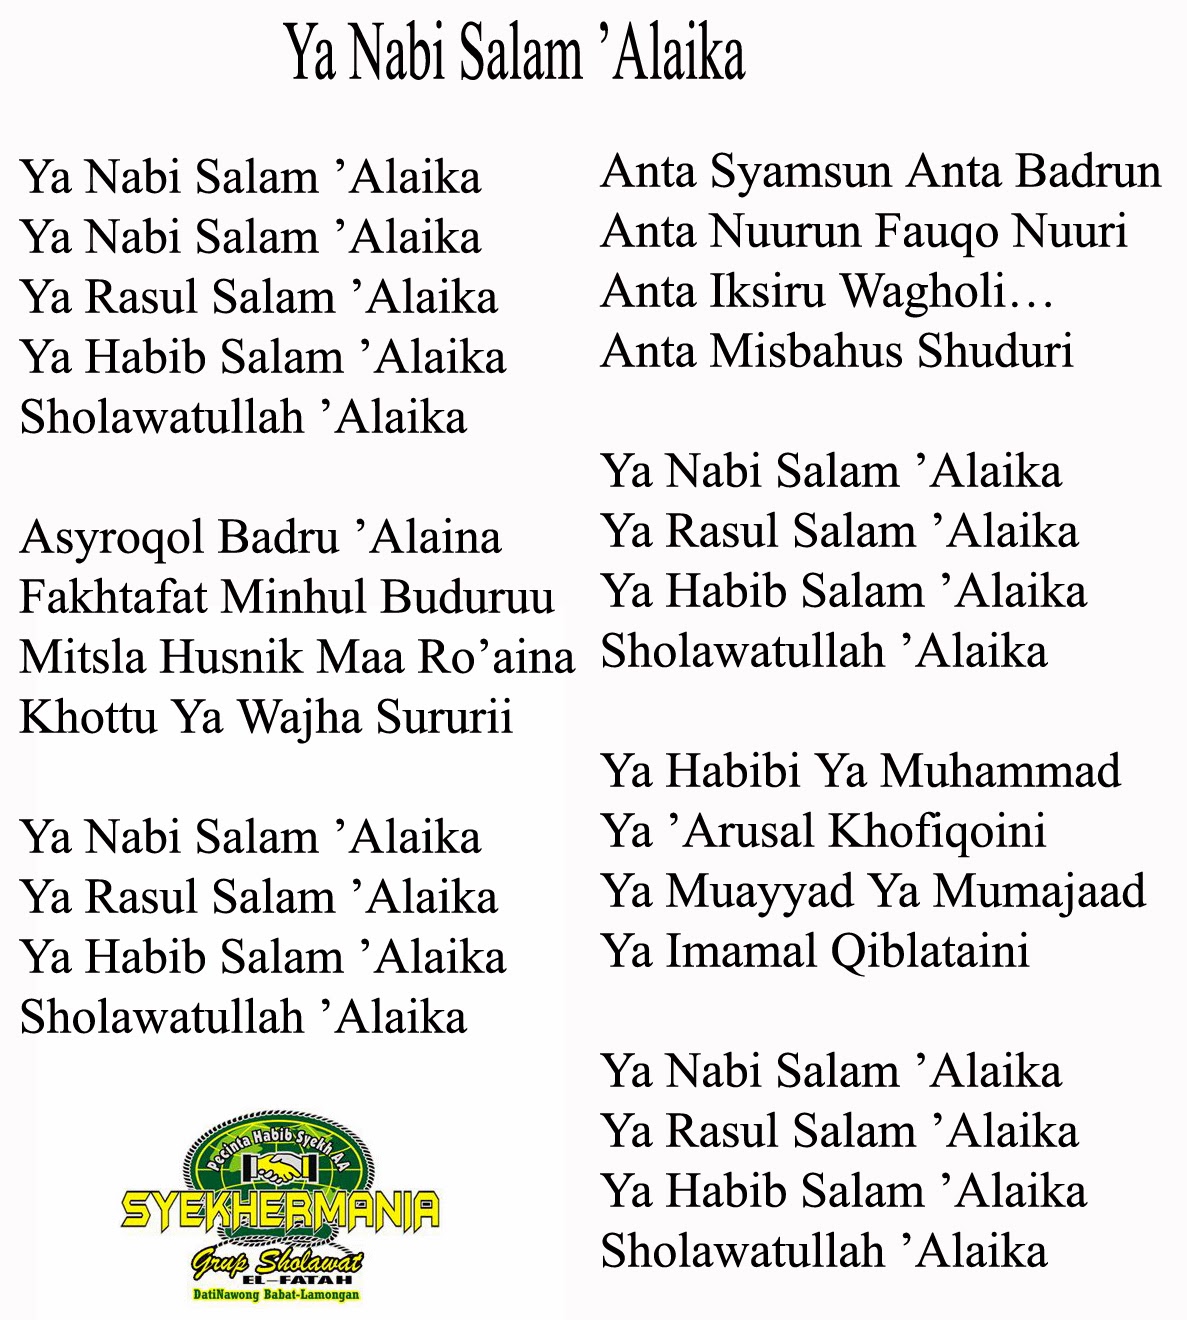 Lirik Shalawat " Ya Nabi Salam Alaika " lengkap ( Habib Syech bin Abdul